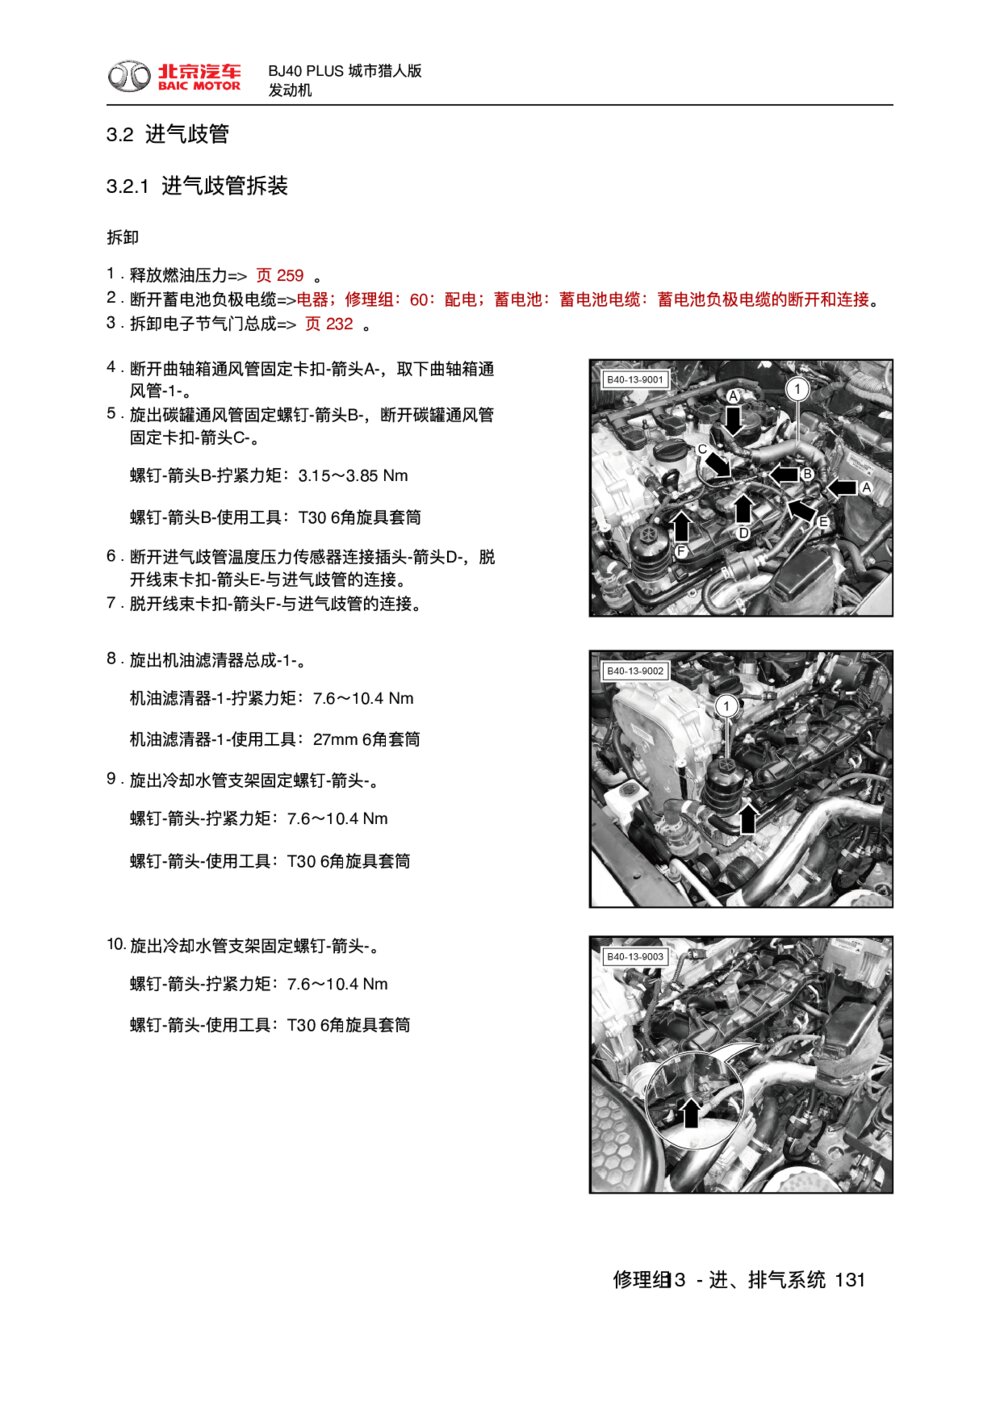 2018款北京BJ40 PLUS发动机进气歧管拆装1